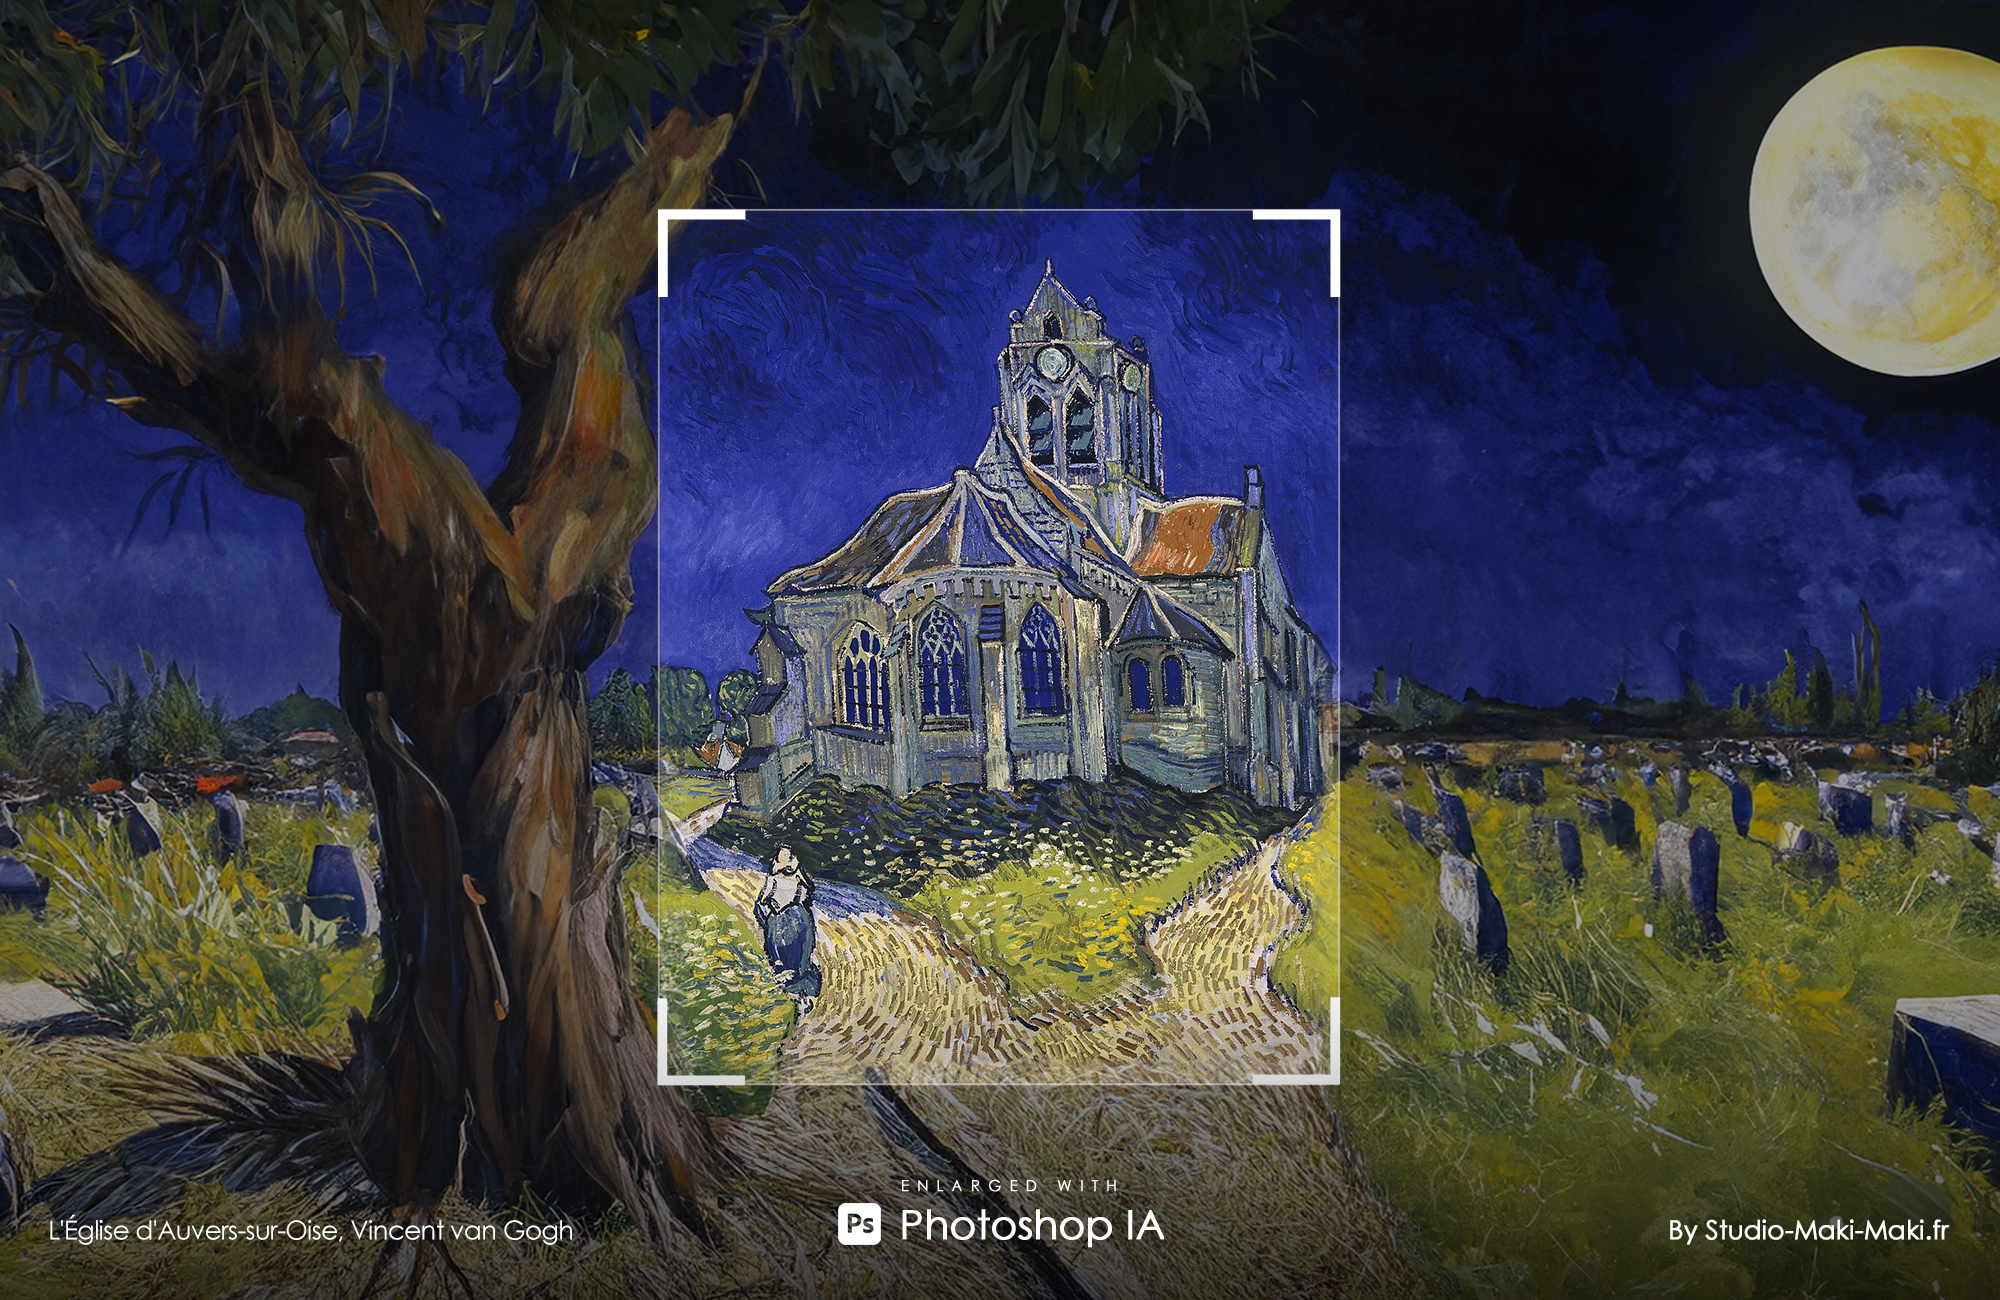 L'Église d'Auvers-sur-Oise, Vincent van Gogh - Enlarged with Photoshop IA - By Studio Maki Maki